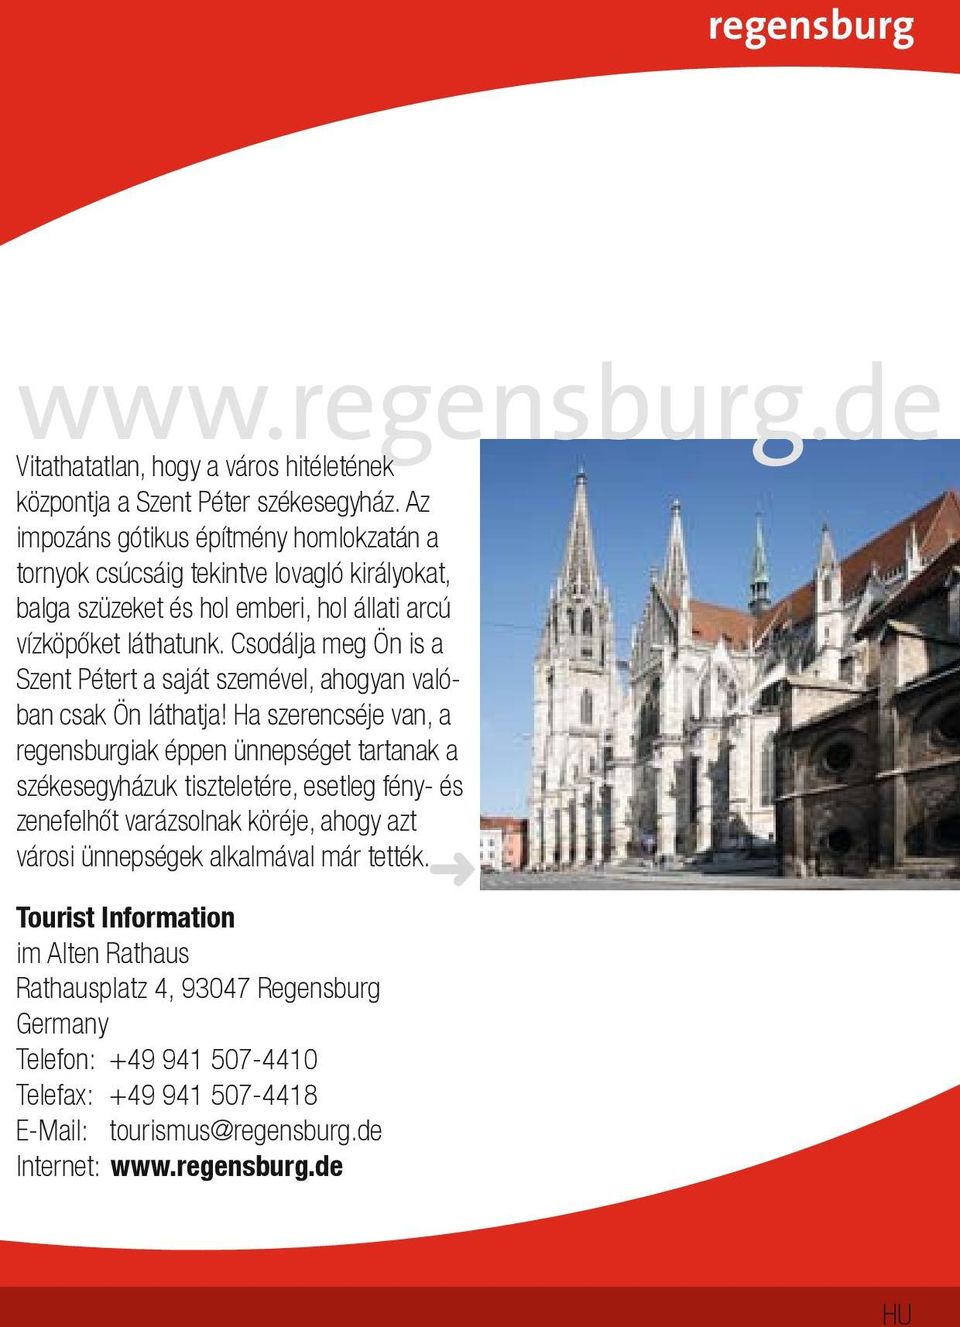 15 legjobb látnivaló Regensburgban (Németország)